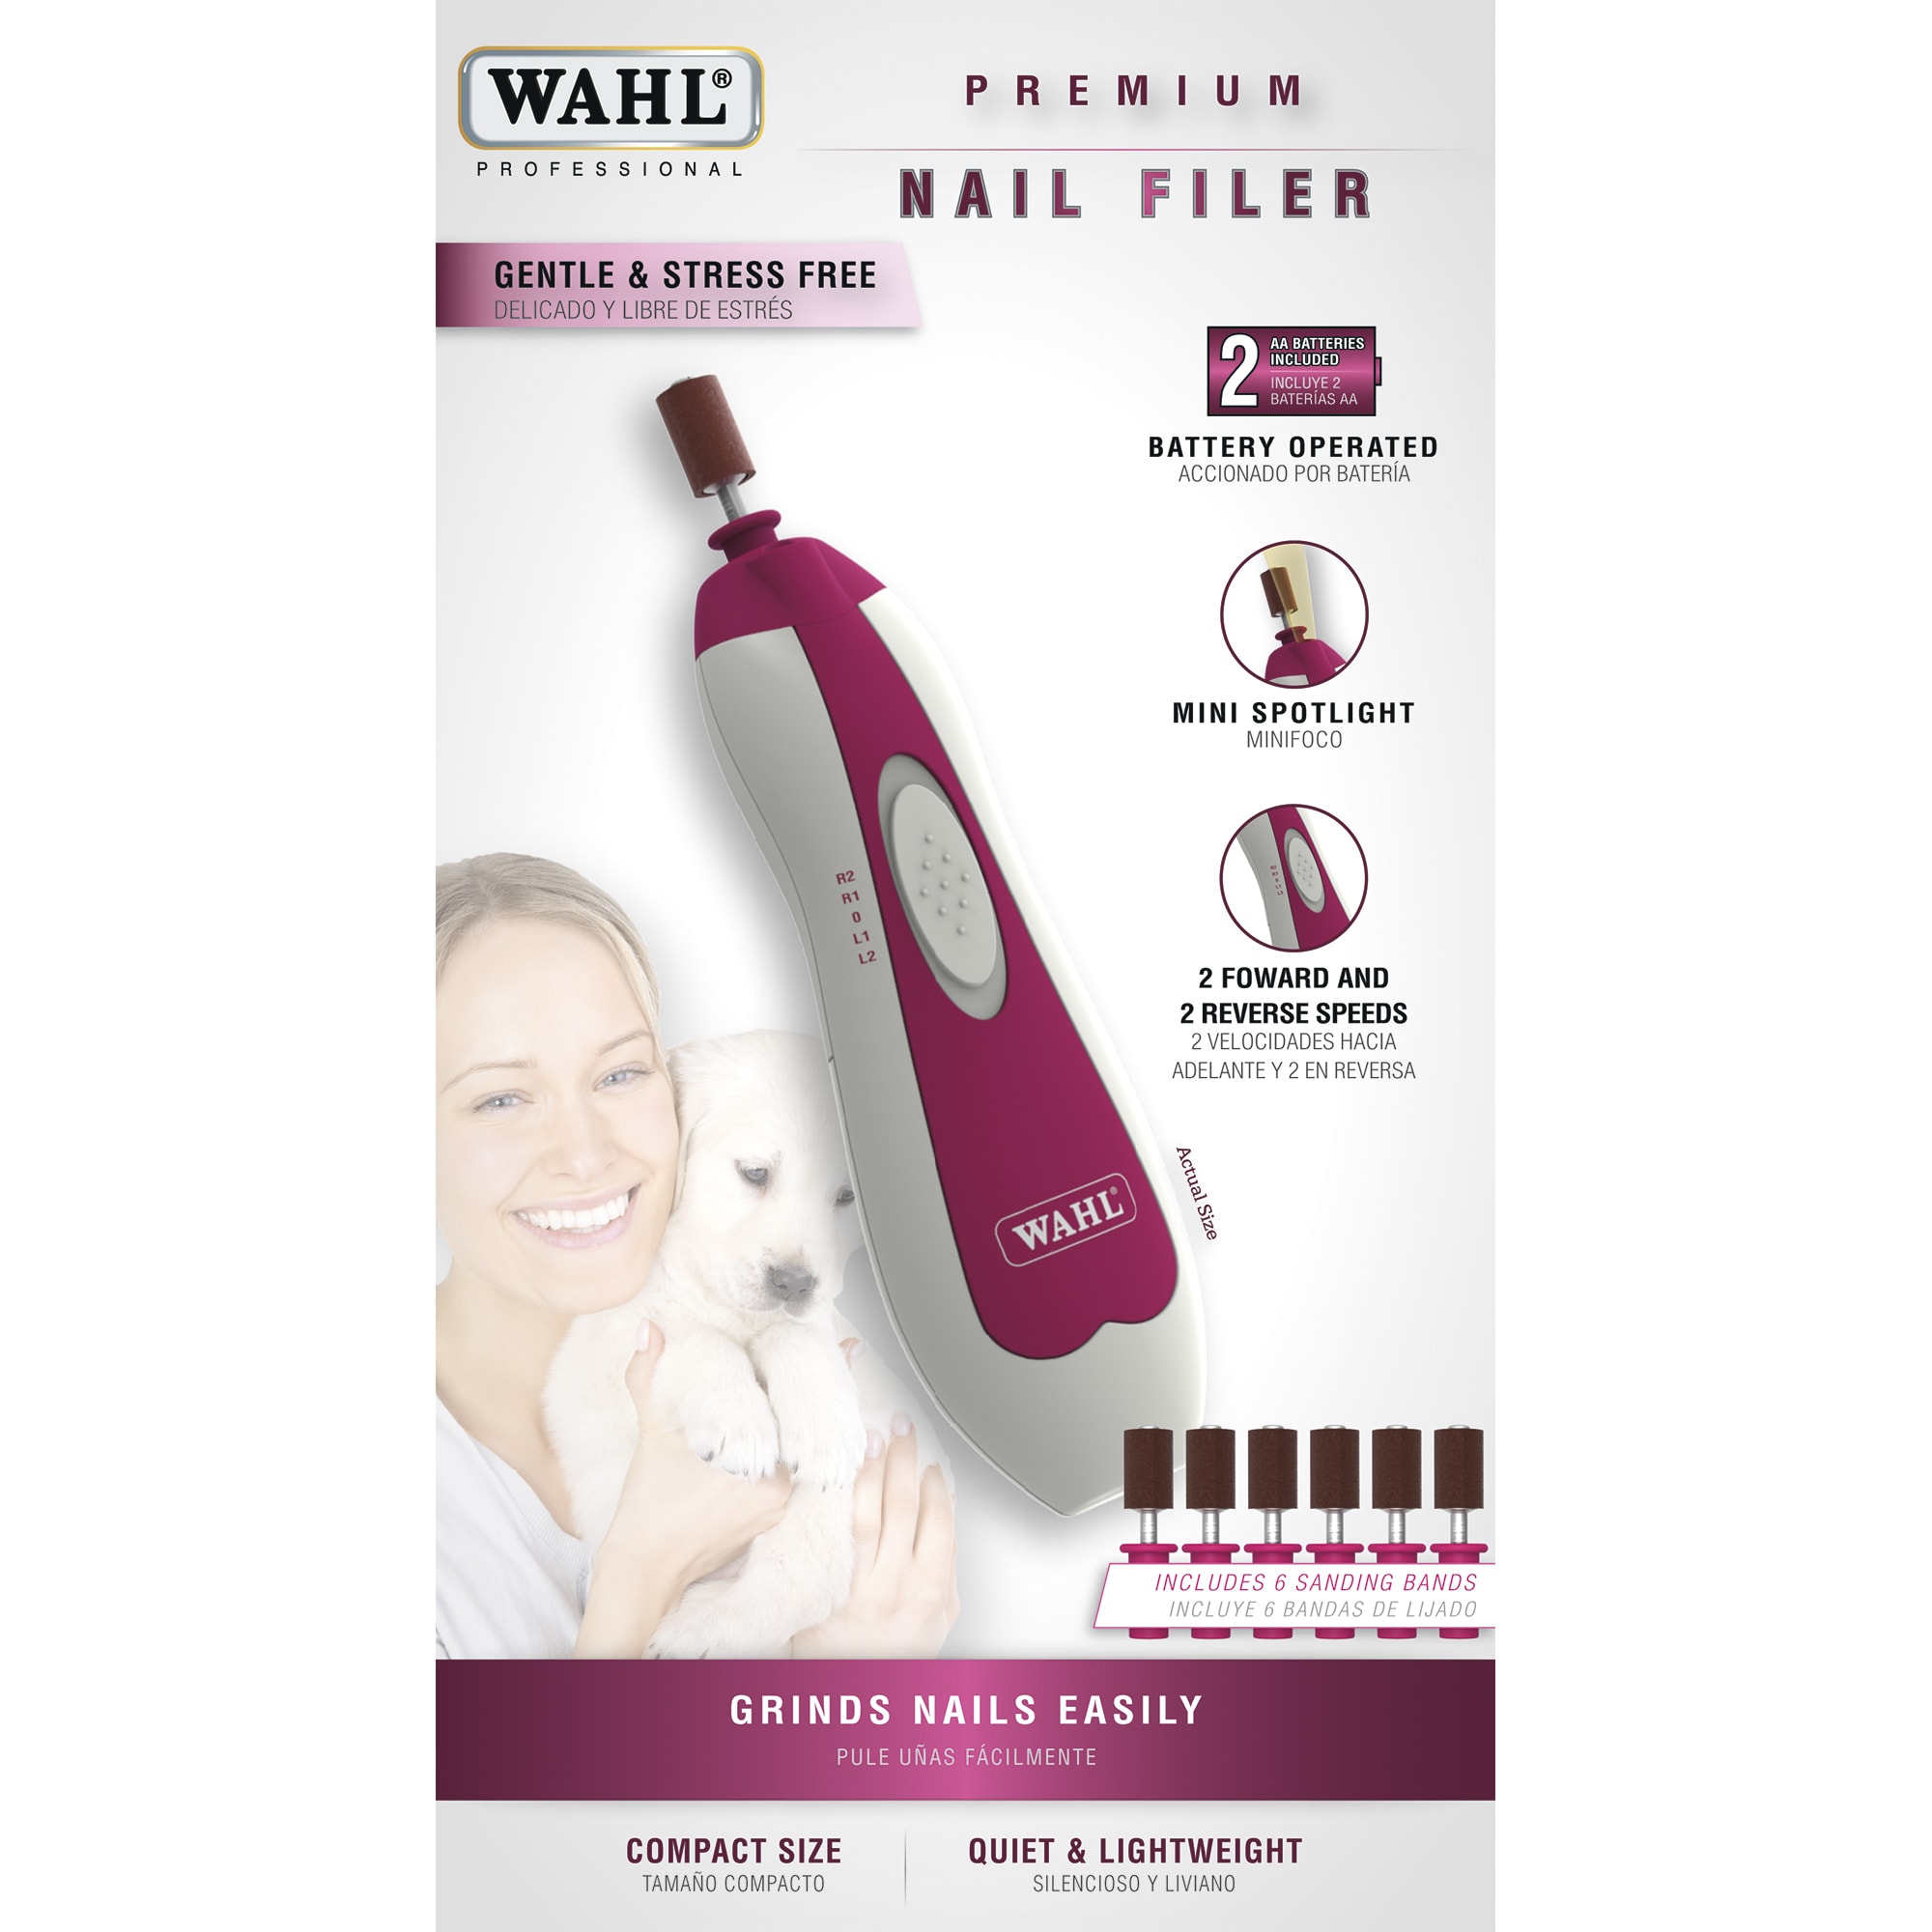 Wahl's Premium Nail Filer | Petco